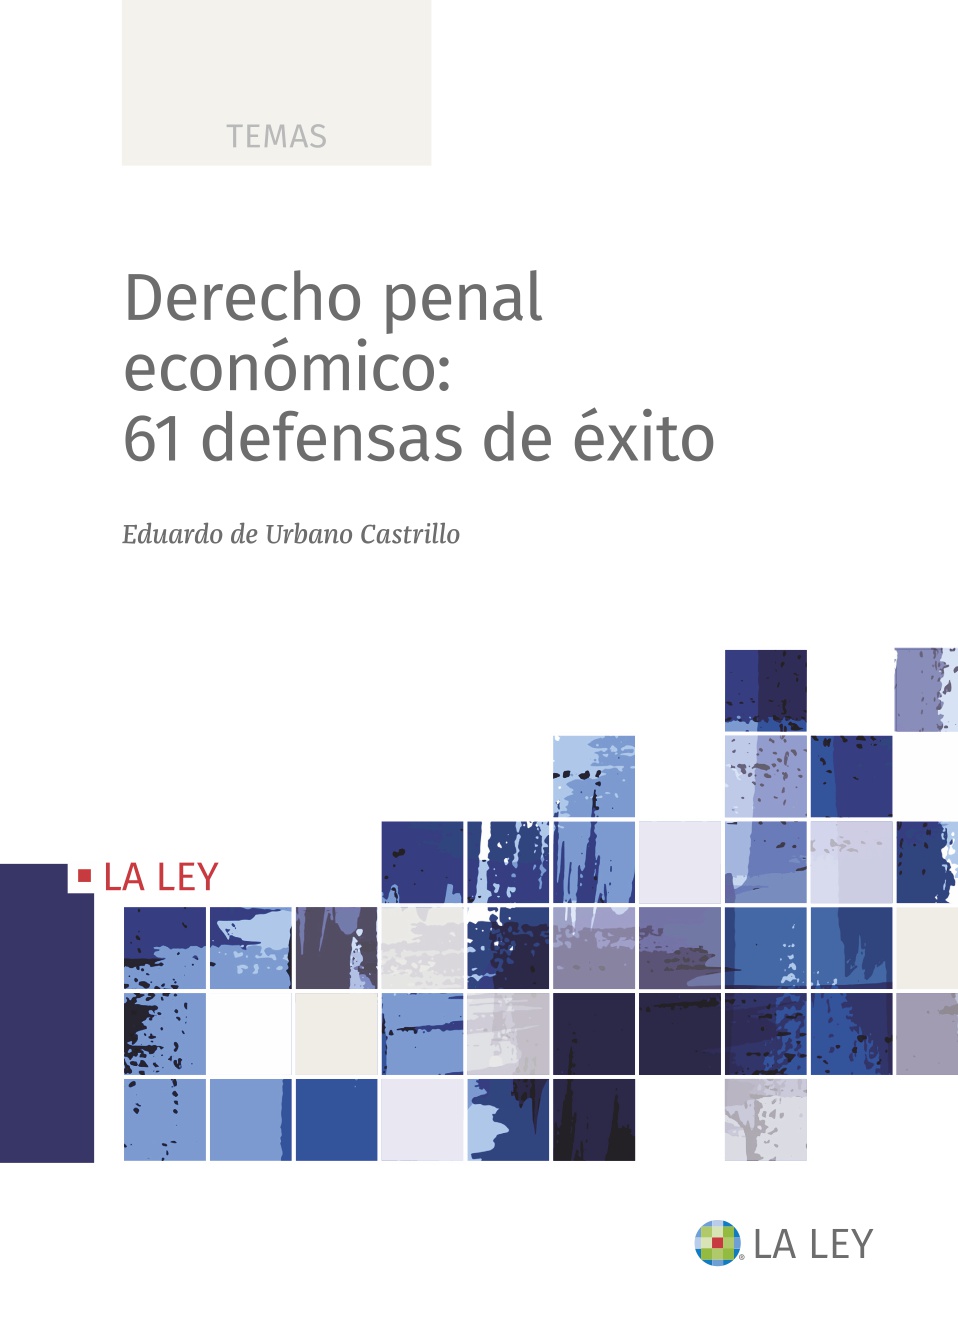 DERECHO PENAL ECONOMICO EDUARDO DE URBANO CASTRILLO